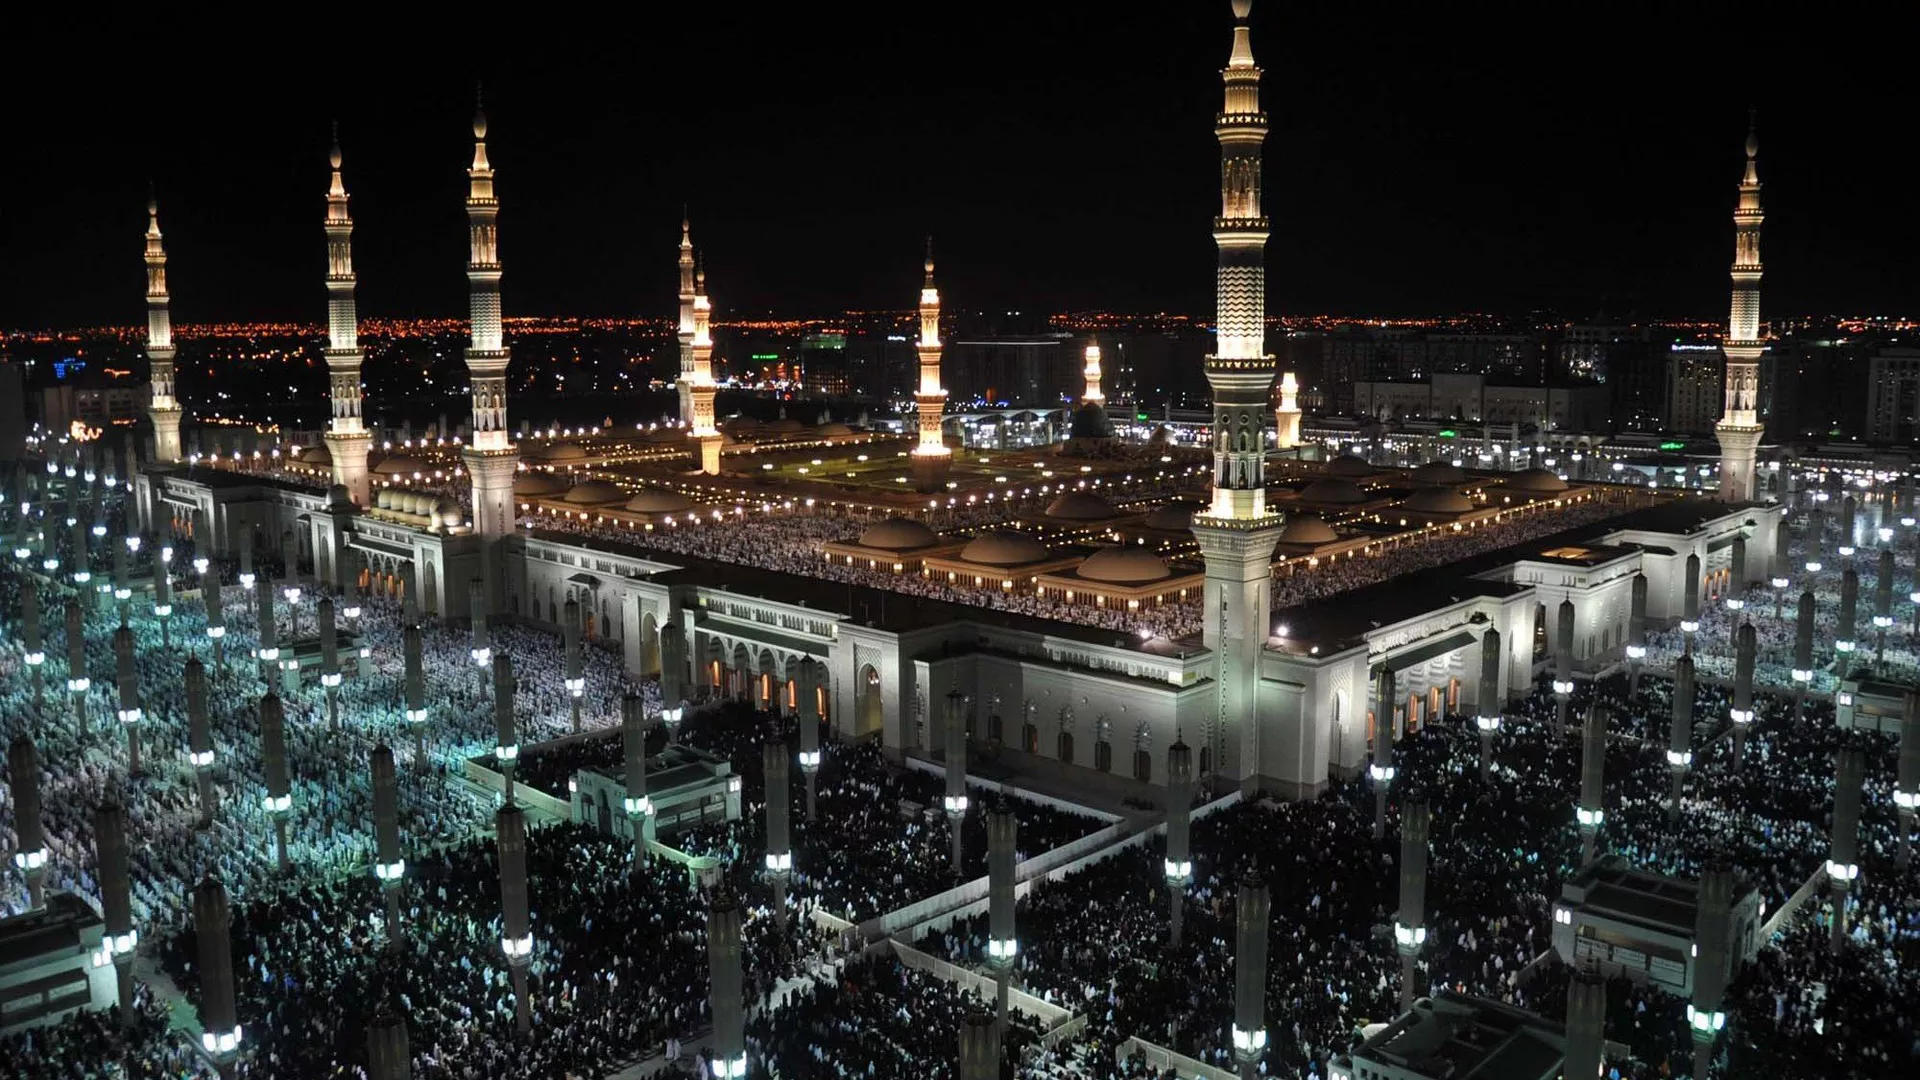 قيام القوات الخاصة لأمن المسجد النبوي في المملكة العربية السعودية بضبط شخص يتحدث بمحتوى يمس القيم الدينية واتخاذ الإجراءات اللازمة بحقه